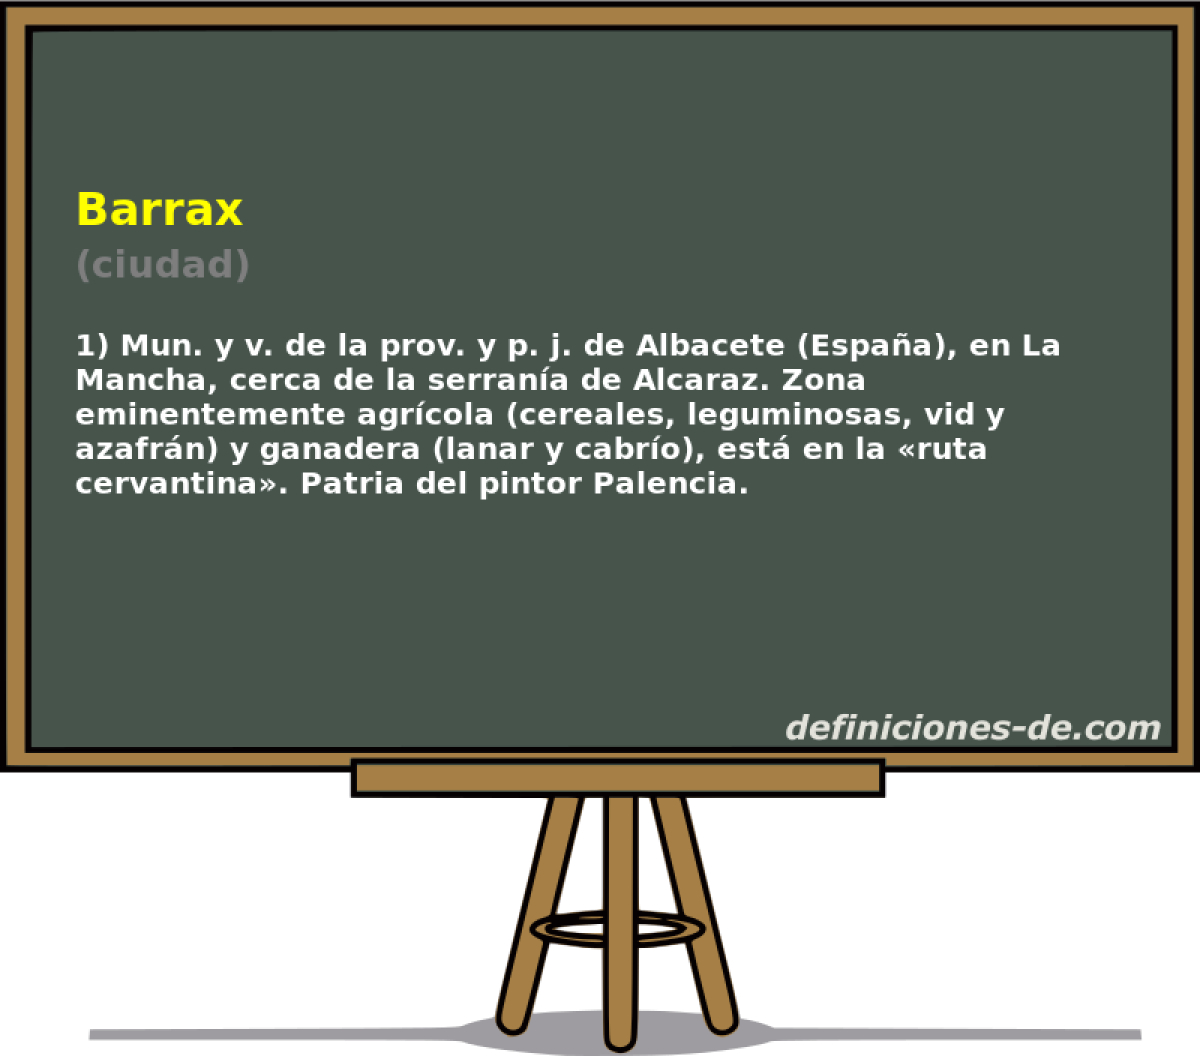 Barrax (ciudad)